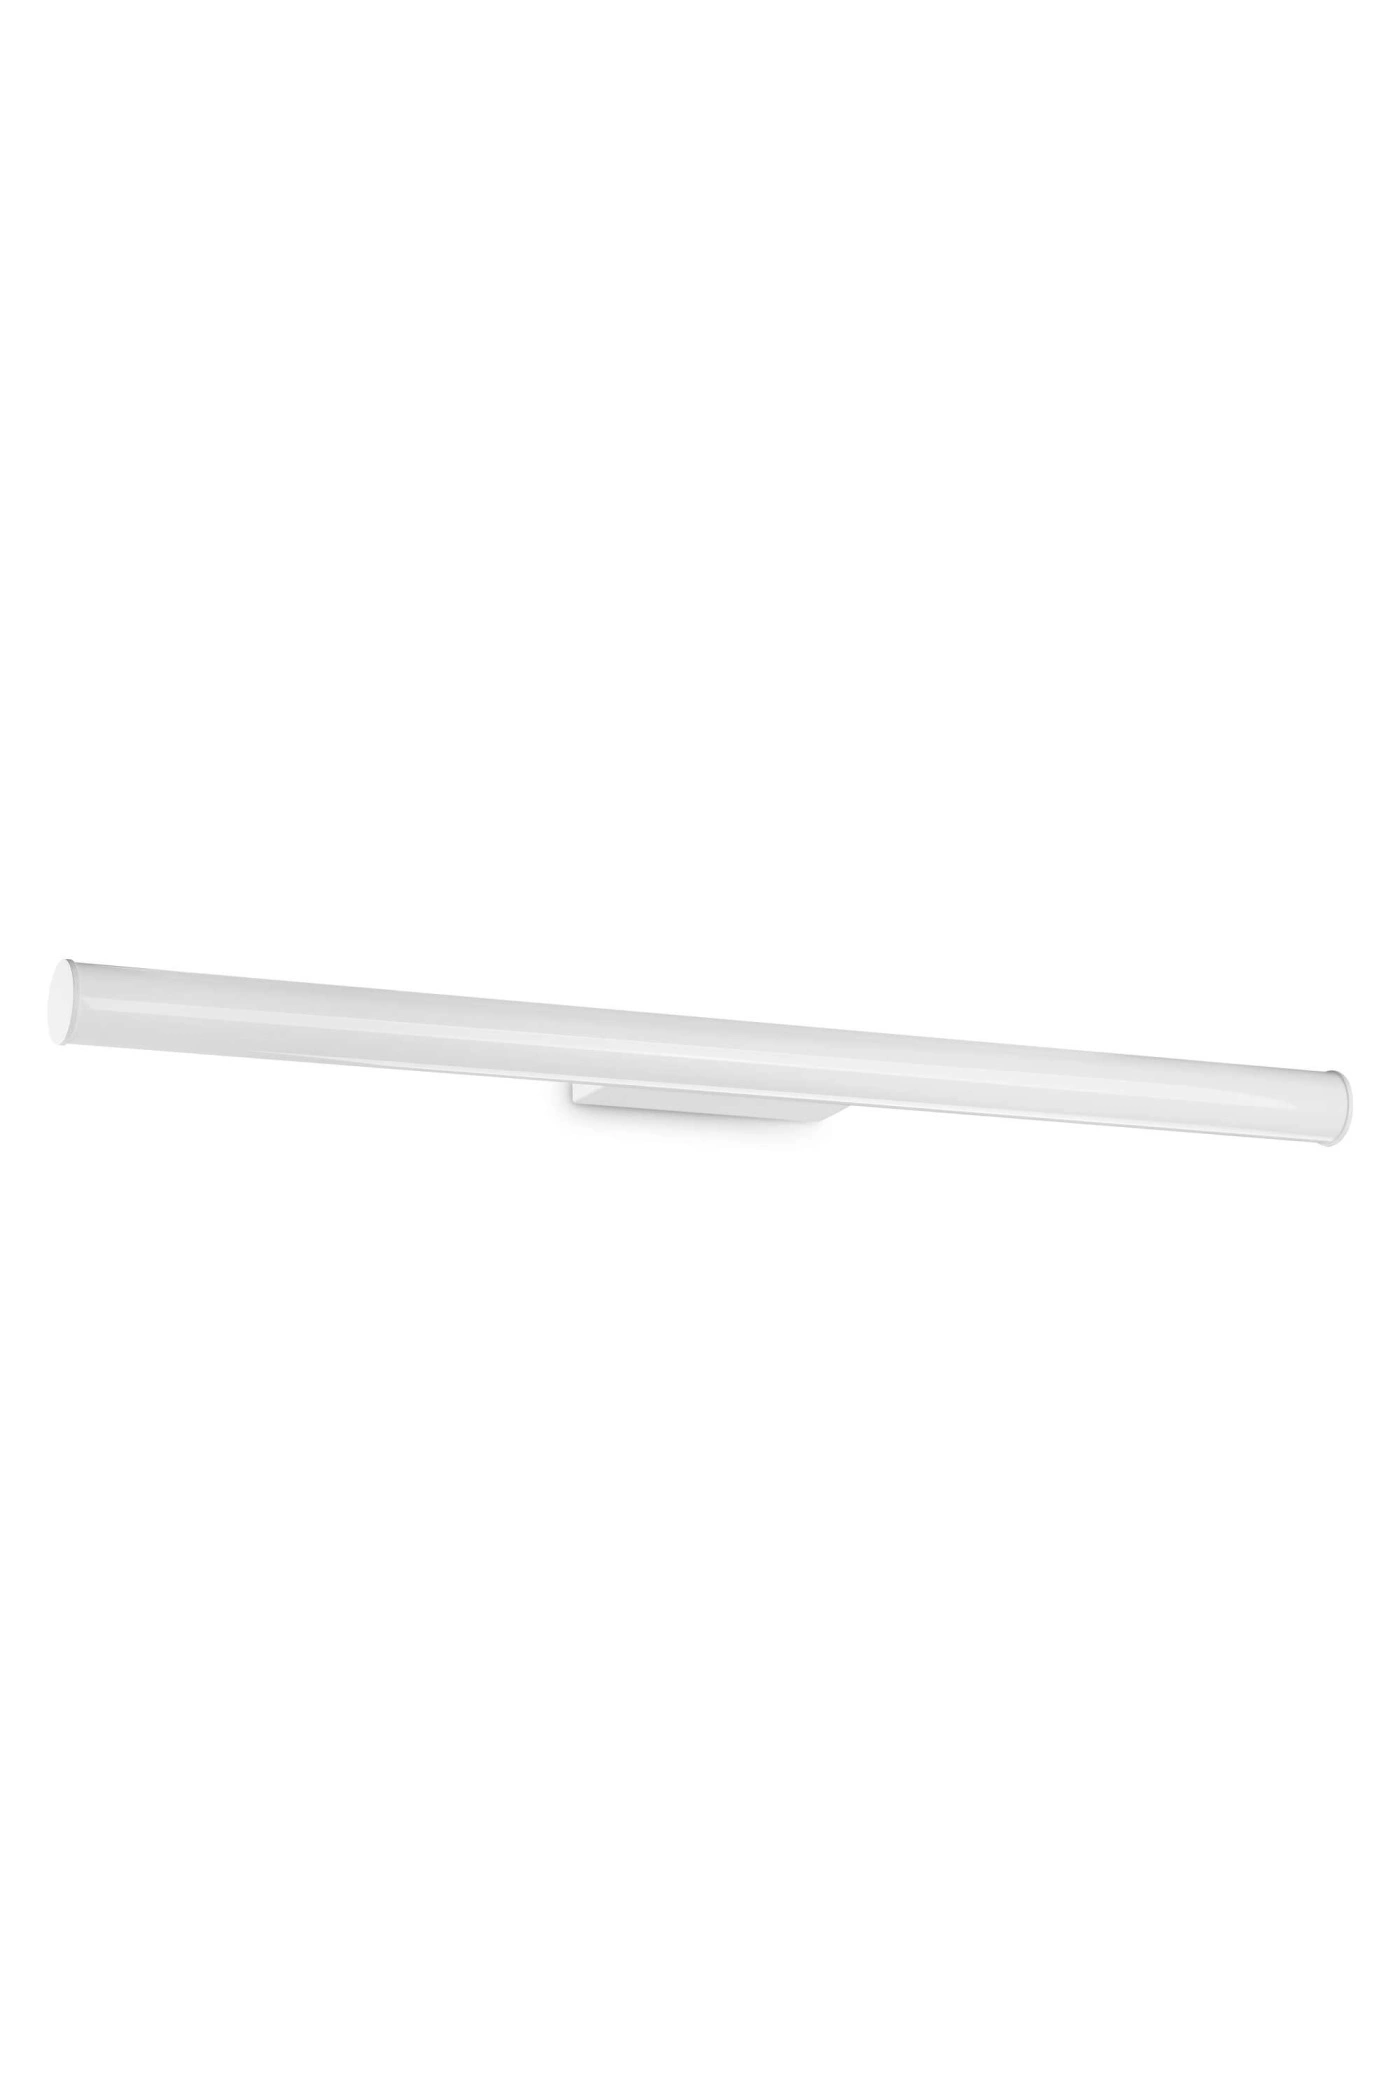   
                        
                        Подсветка для ванной IDEAL LUX (Италия) 10442    
                         в стиле Хай-тек.  
                        Тип источника света: встроенный led-модуль, несъемный.                                                 Цвета плафонов и подвесок: Белый.                         Материал: Пластик.                          фото 1